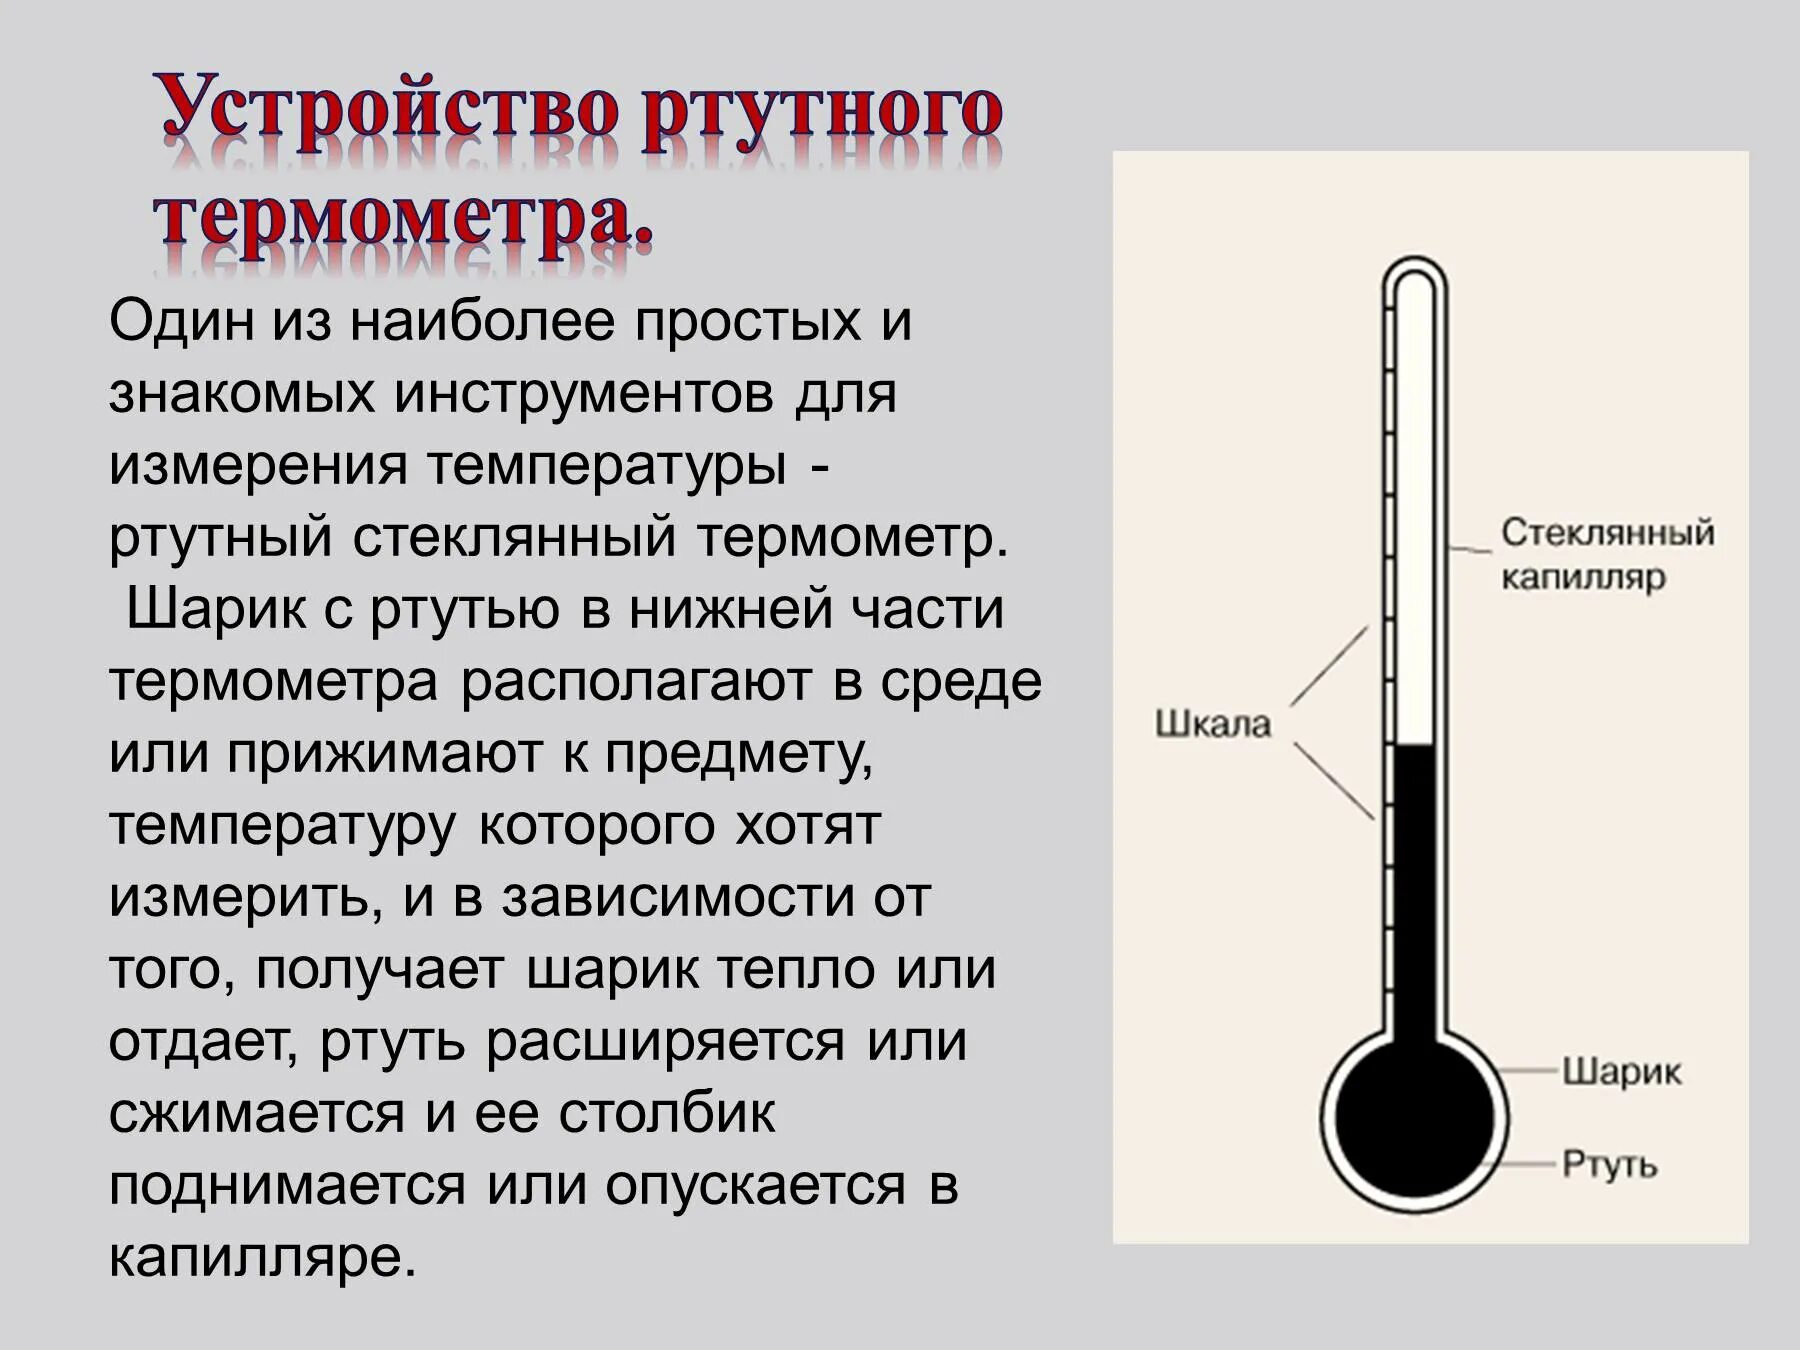 Как устроен ртутный градусник схема. Как устроен ртутный градусник для измерения температуры тела. Как устроен ртутный термометр. Как устроен градусник ртутный для измерения температуры.